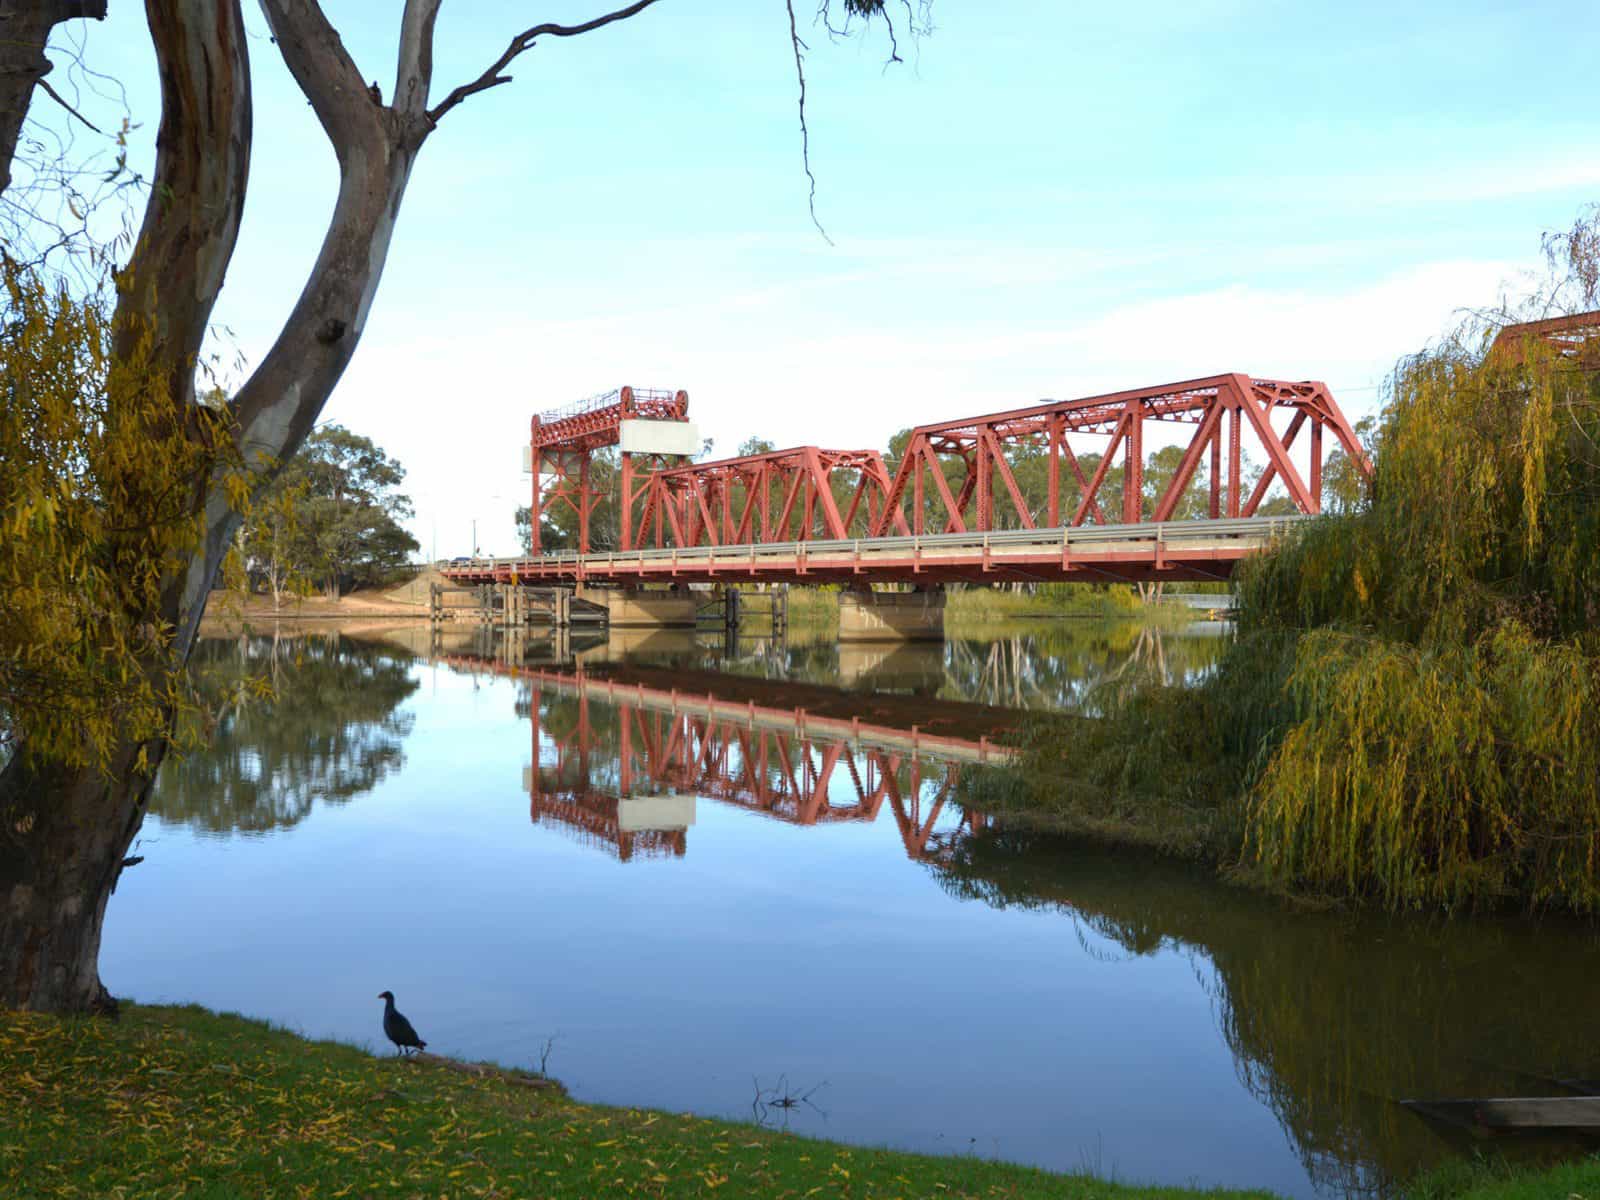 Breathtaking views of the heritage listed Paringa Bridge